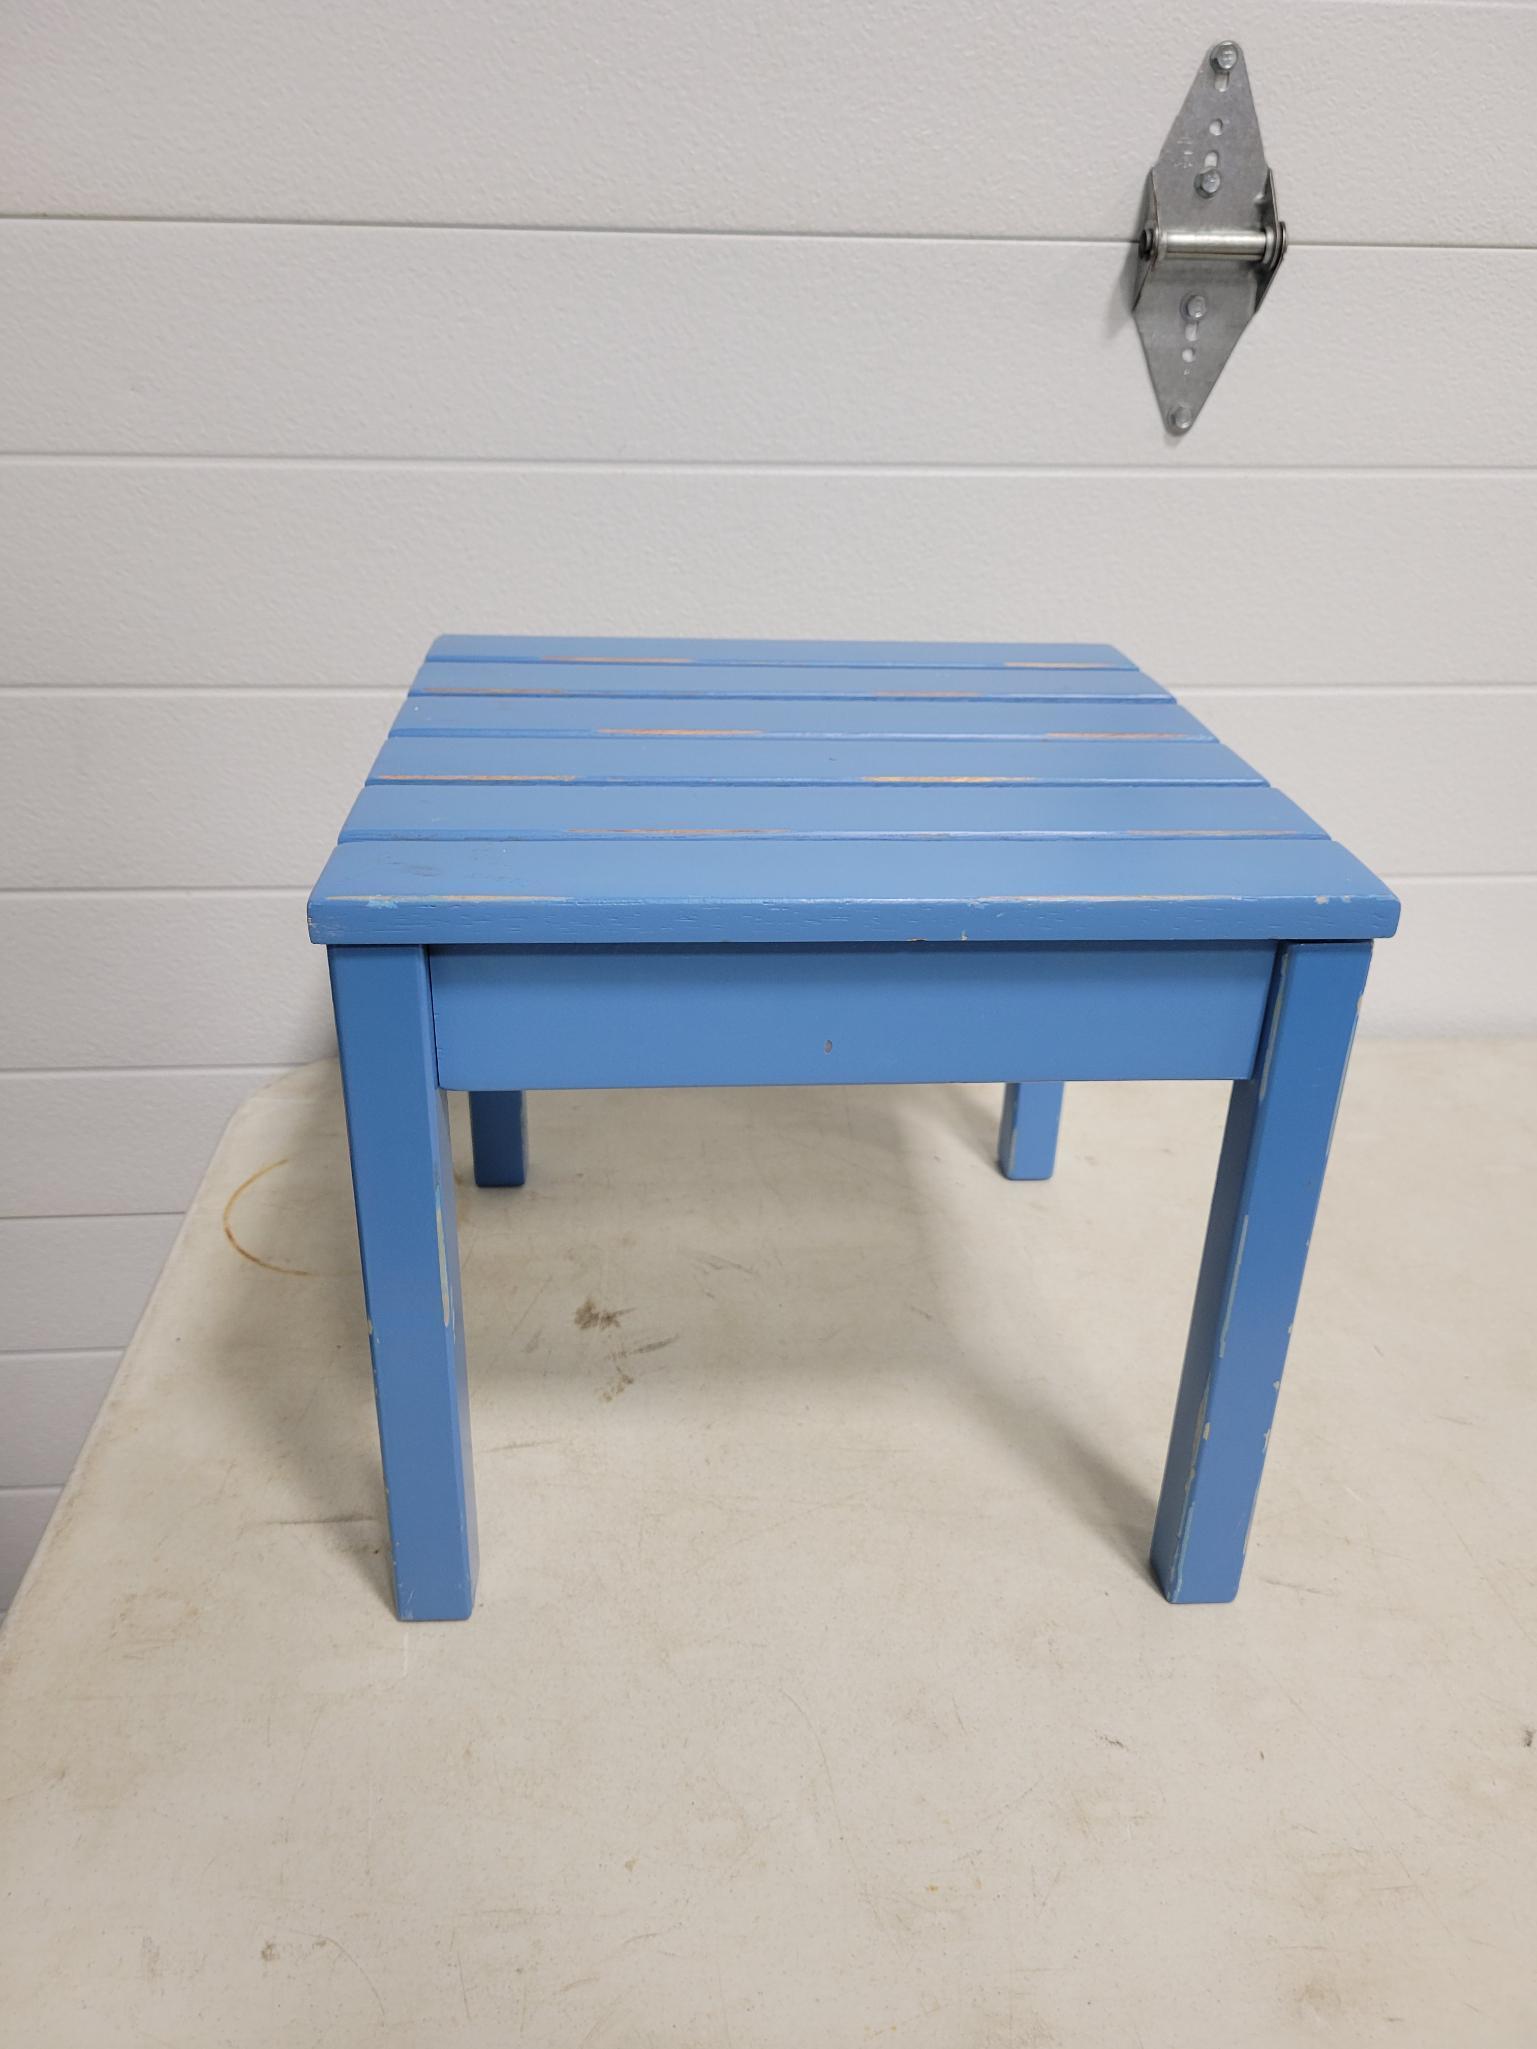 Blue stool 15in by 12in